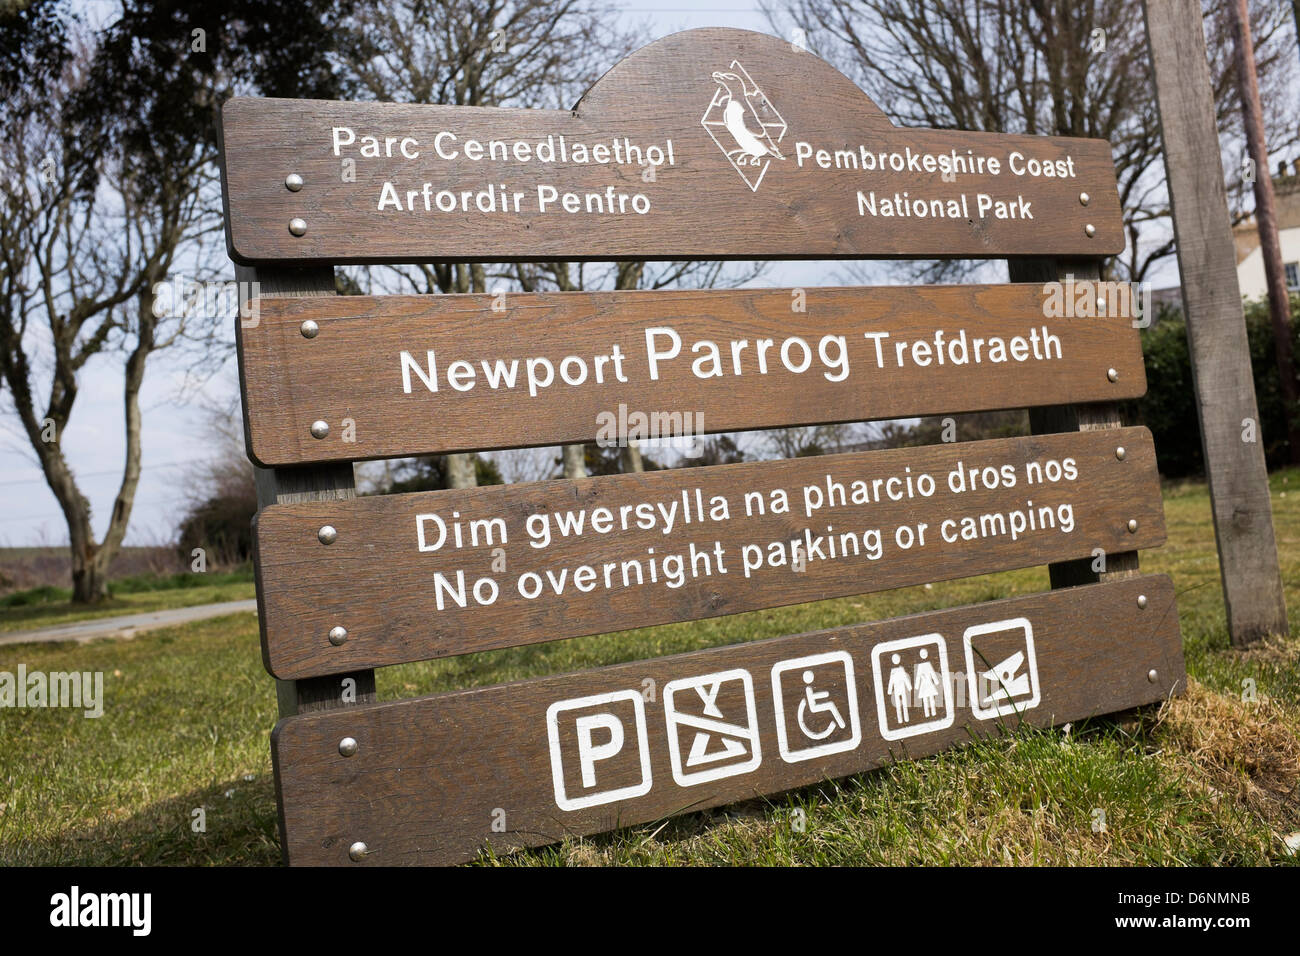 Le parc national du Pembrokeshire, affichage à l'Parrog, Newport , West Wales UK Banque D'Images